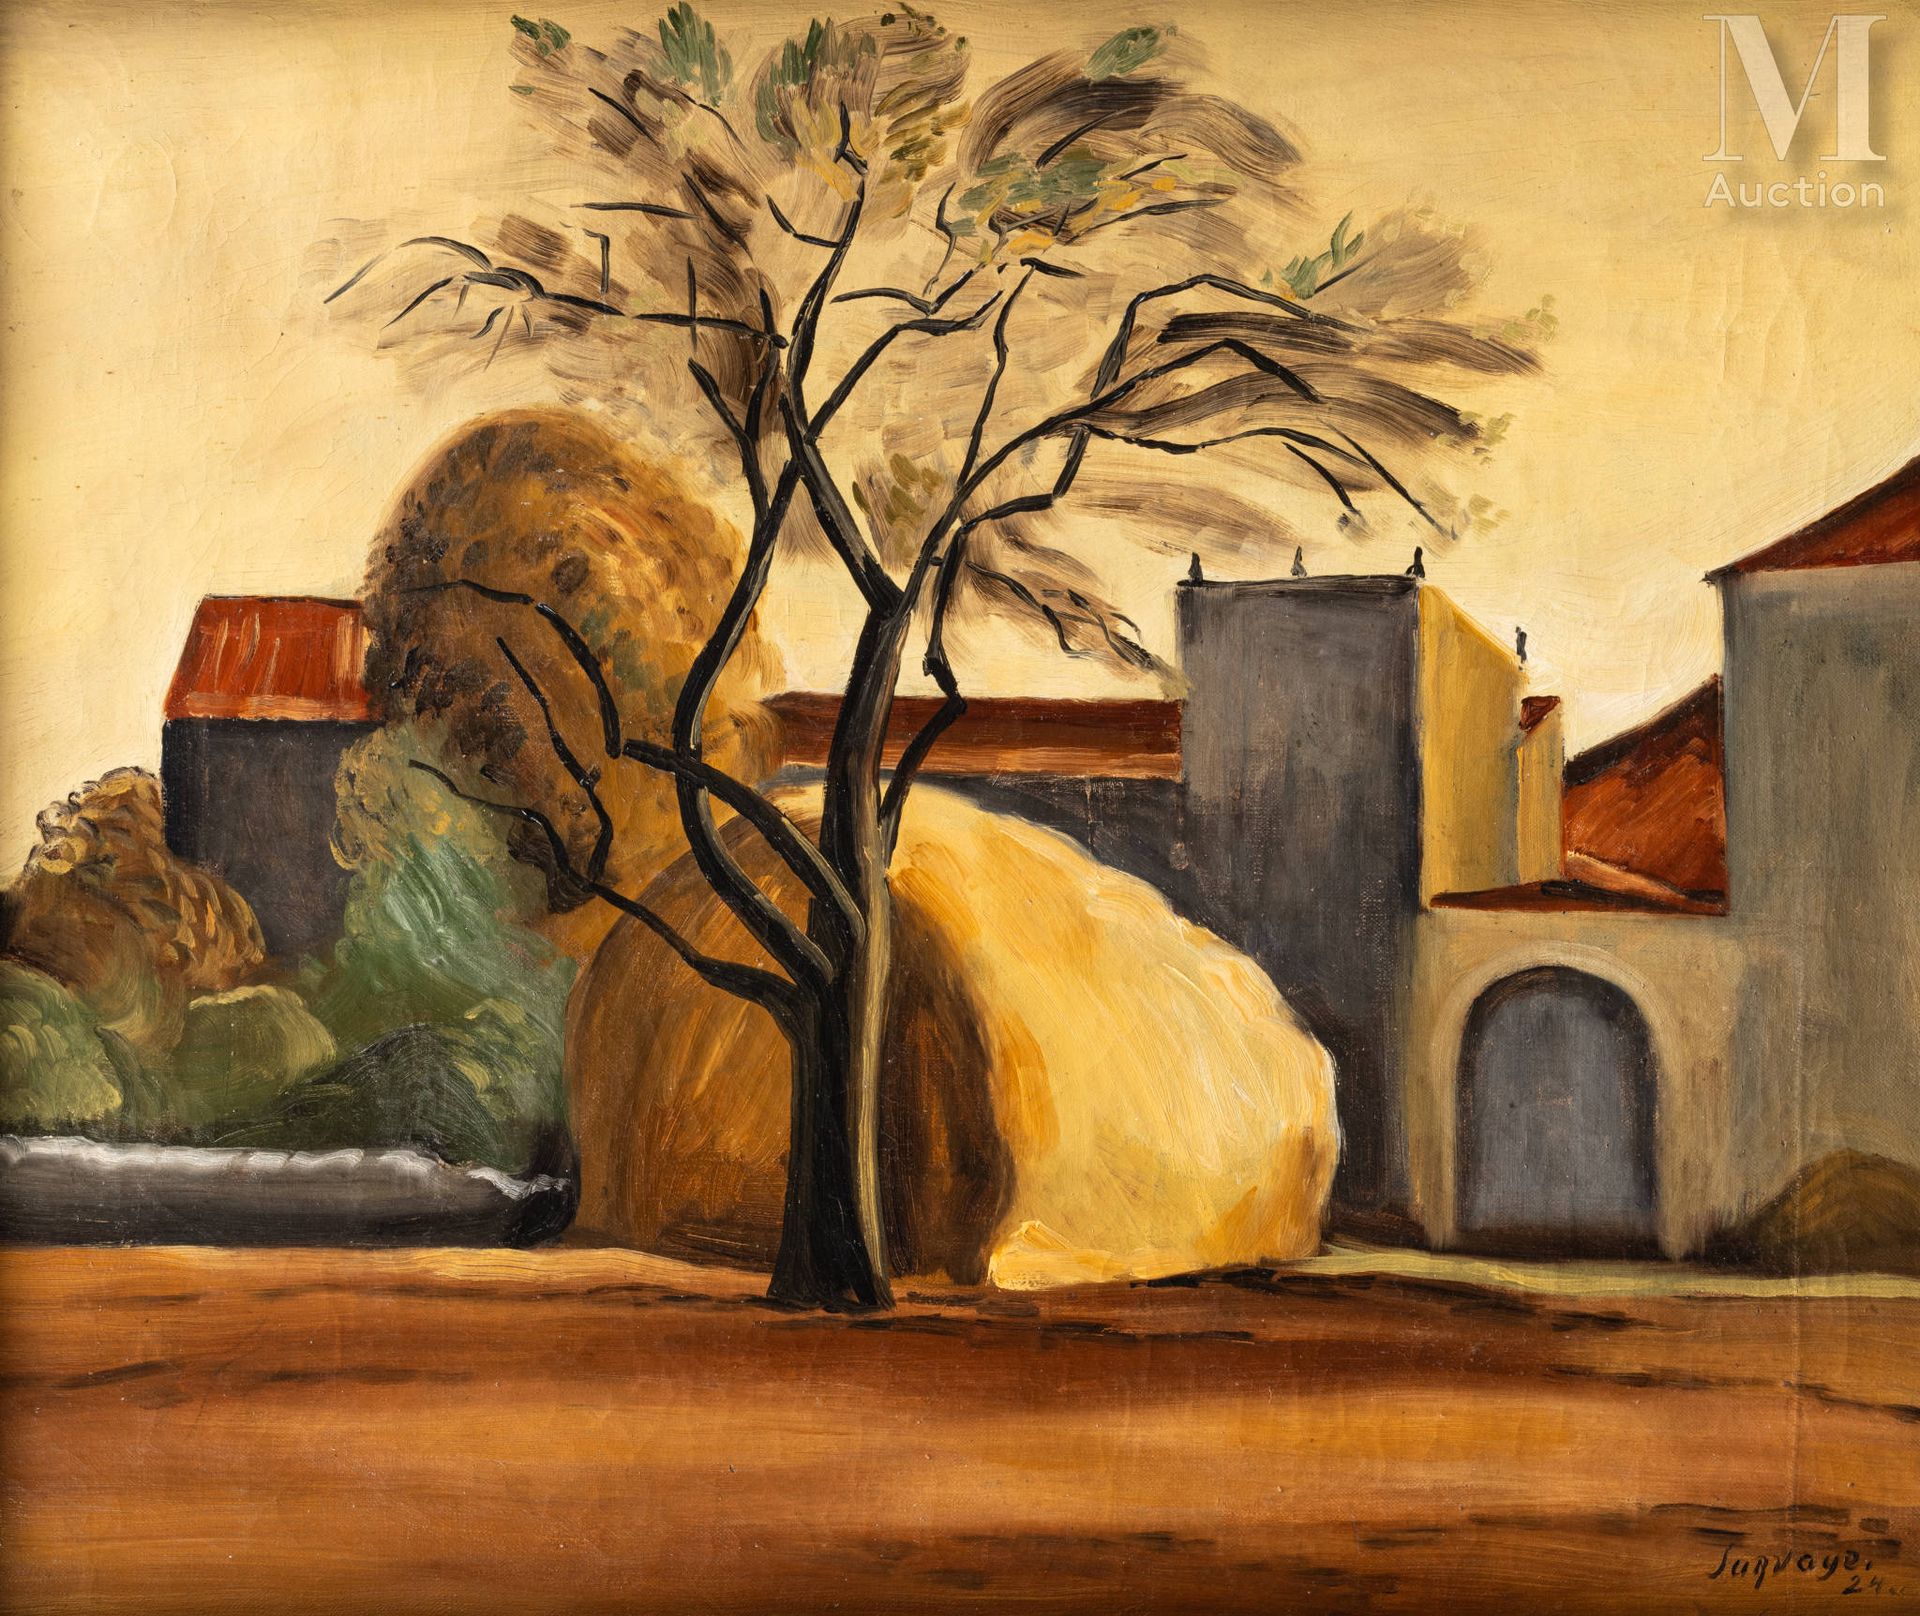 Léopold SURVAGE (Moscou 1879 - Paris 1968) Maison Saint Jean près de Collioure

&hellip;